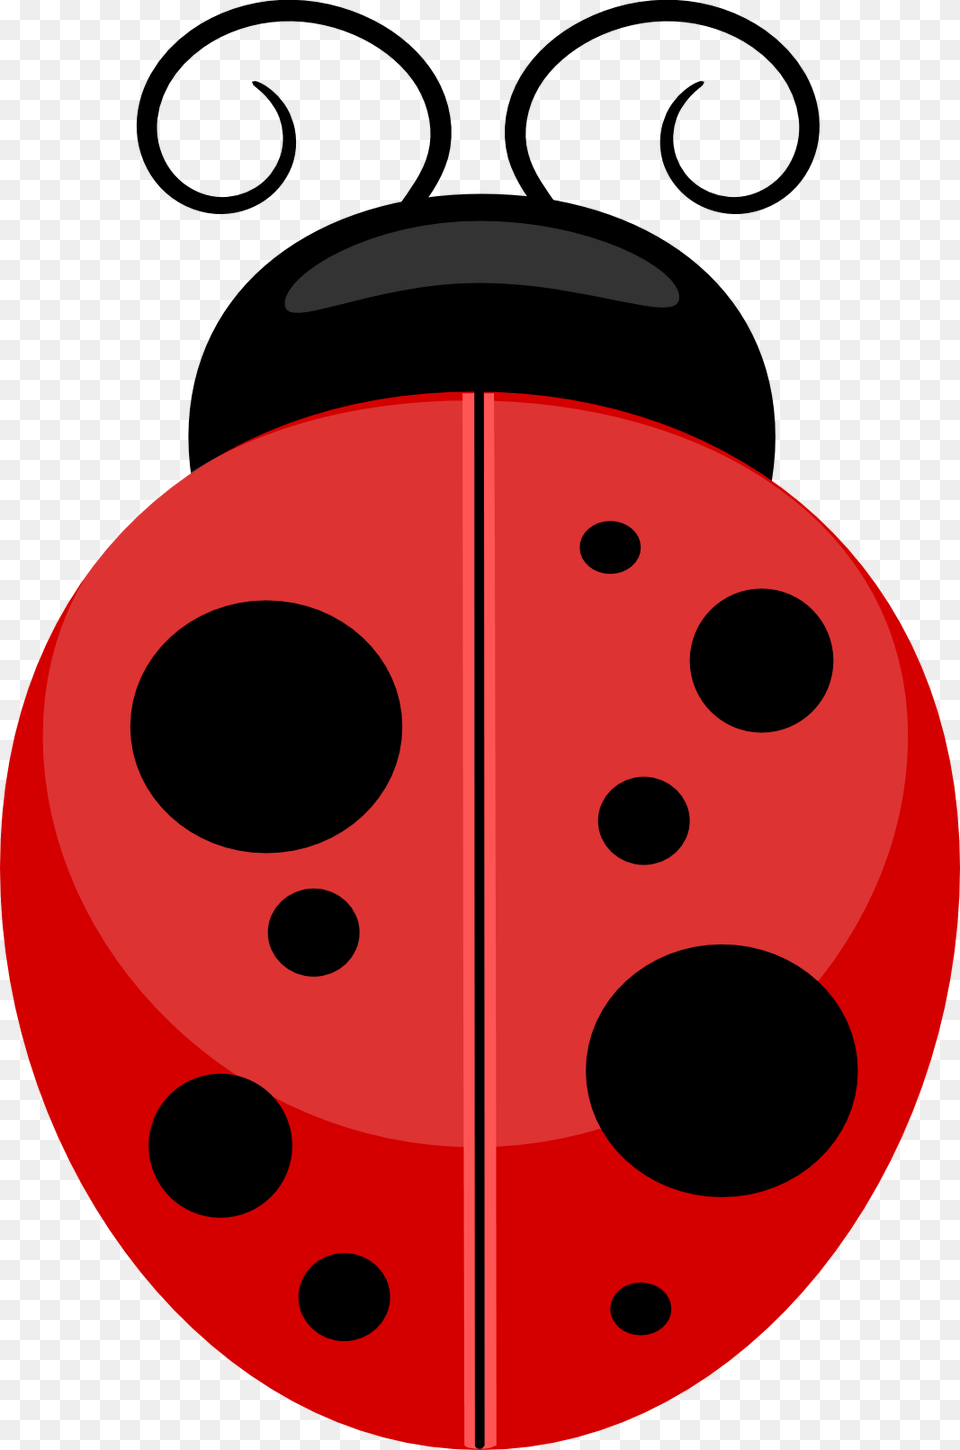 Transparent Ladybug Background Transparent Background Ladybug Clipart, Ammunition, Grenade, Weapon Free Png Download